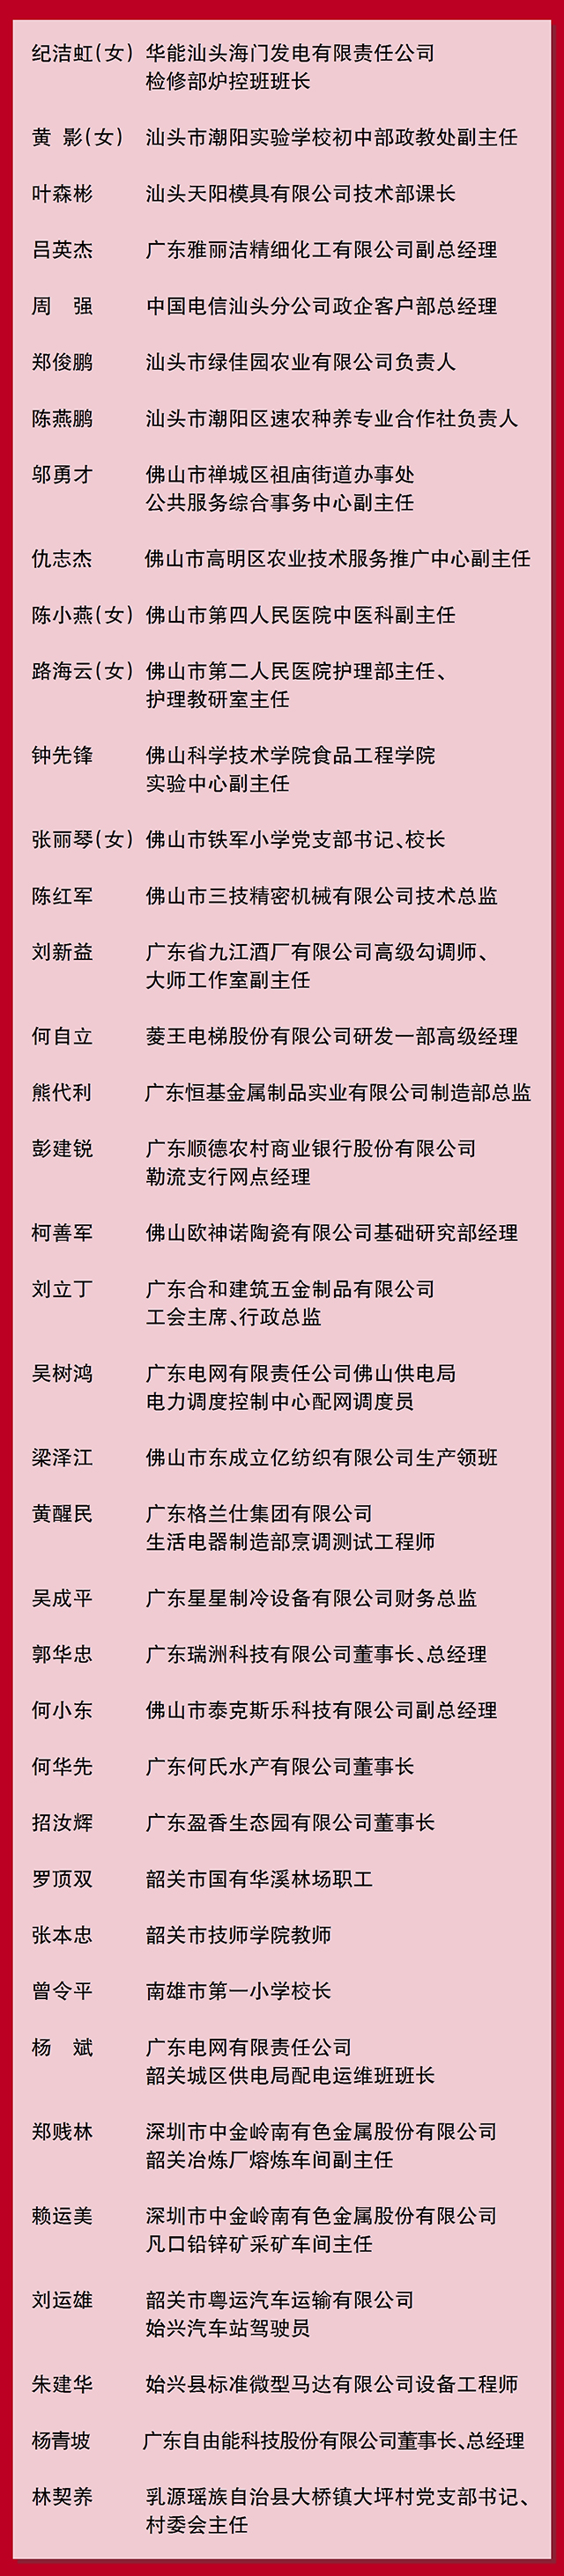 广东省劳动模范名单001.jpg